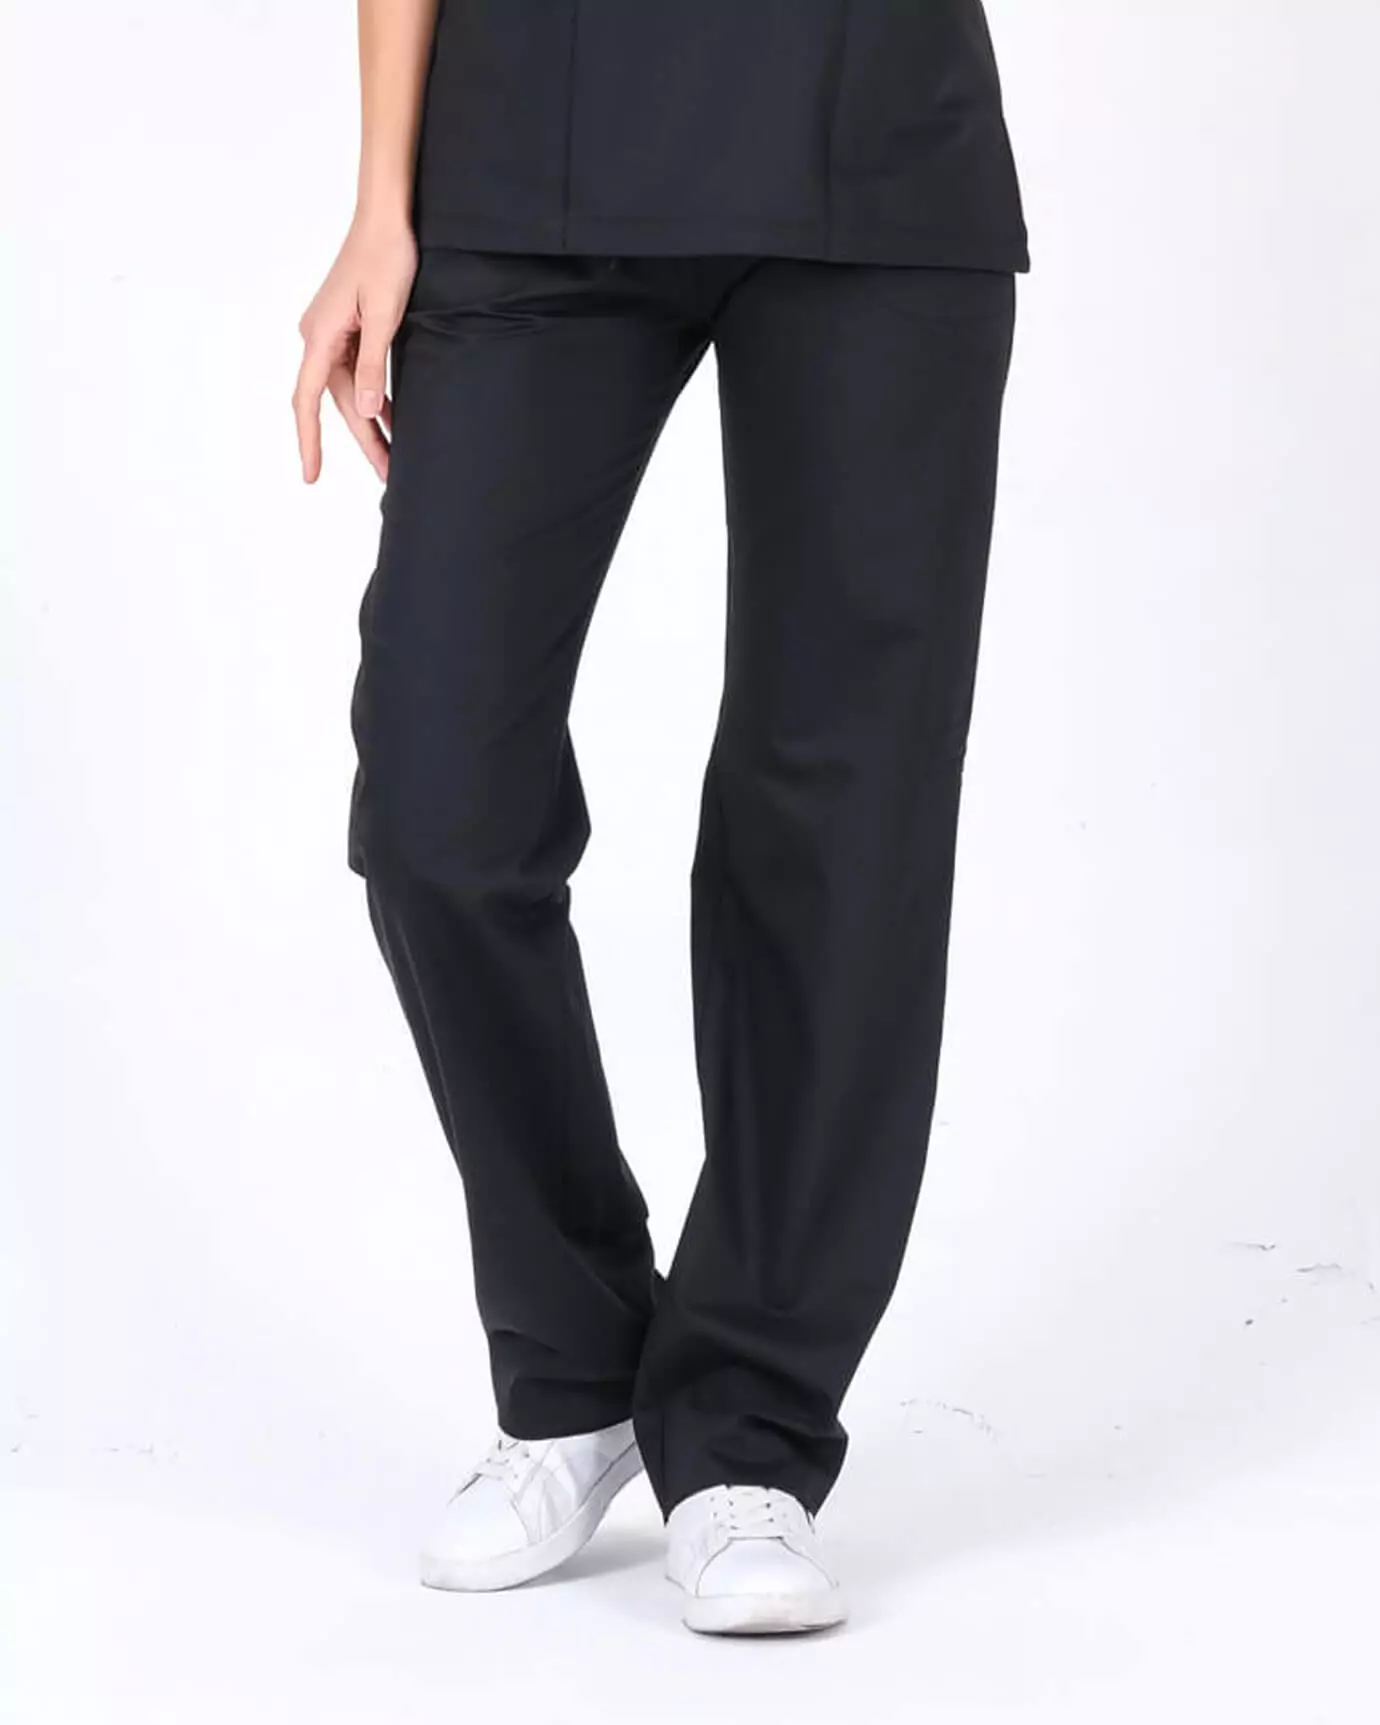 Kadın Hemşire Forması Premium Siyah Pantolon